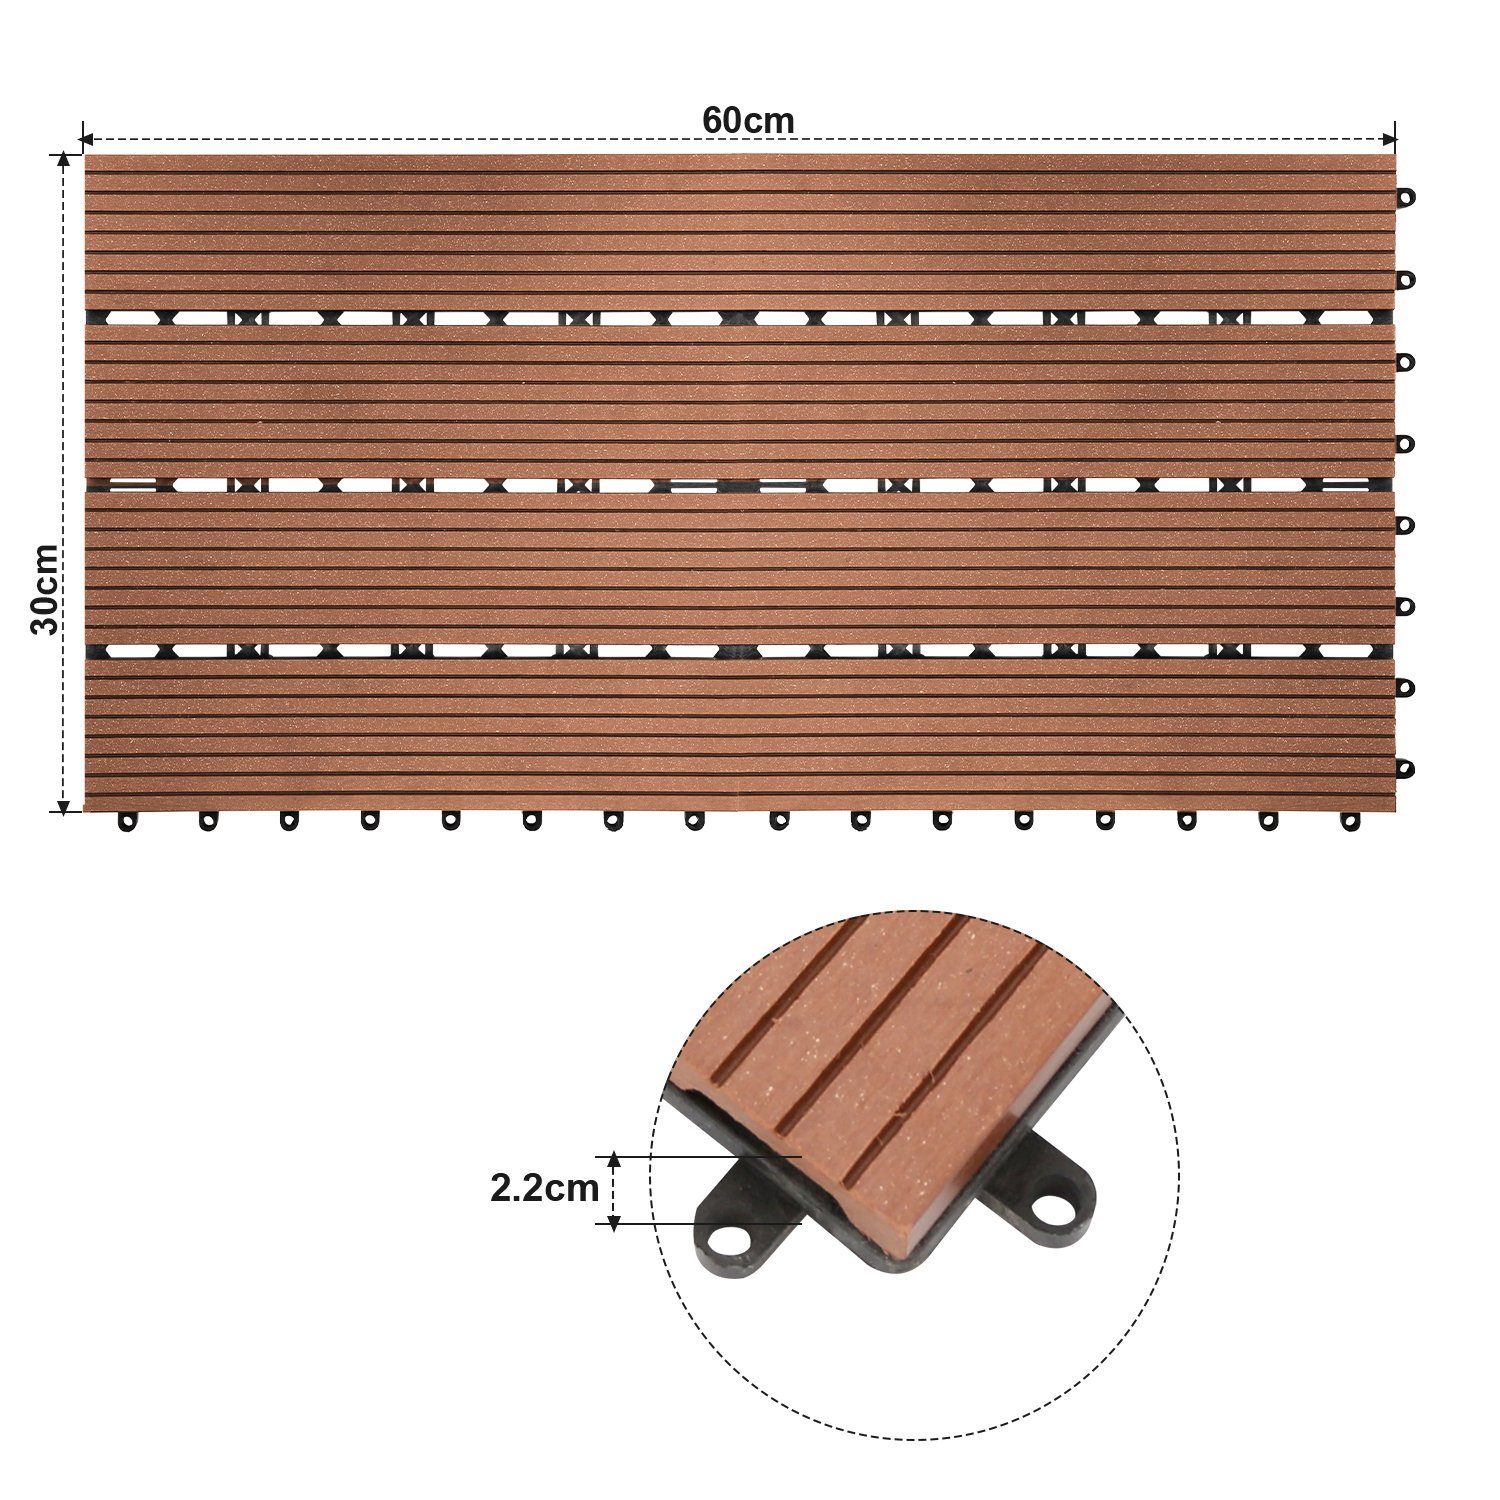 1m² Balkon, Braun und Terrassenfliesen Holzoptik Holzfliesen für 30x60cm Garten Gimisgu in Klicksystem mit Bodenbelag Holzfliesen Drainage